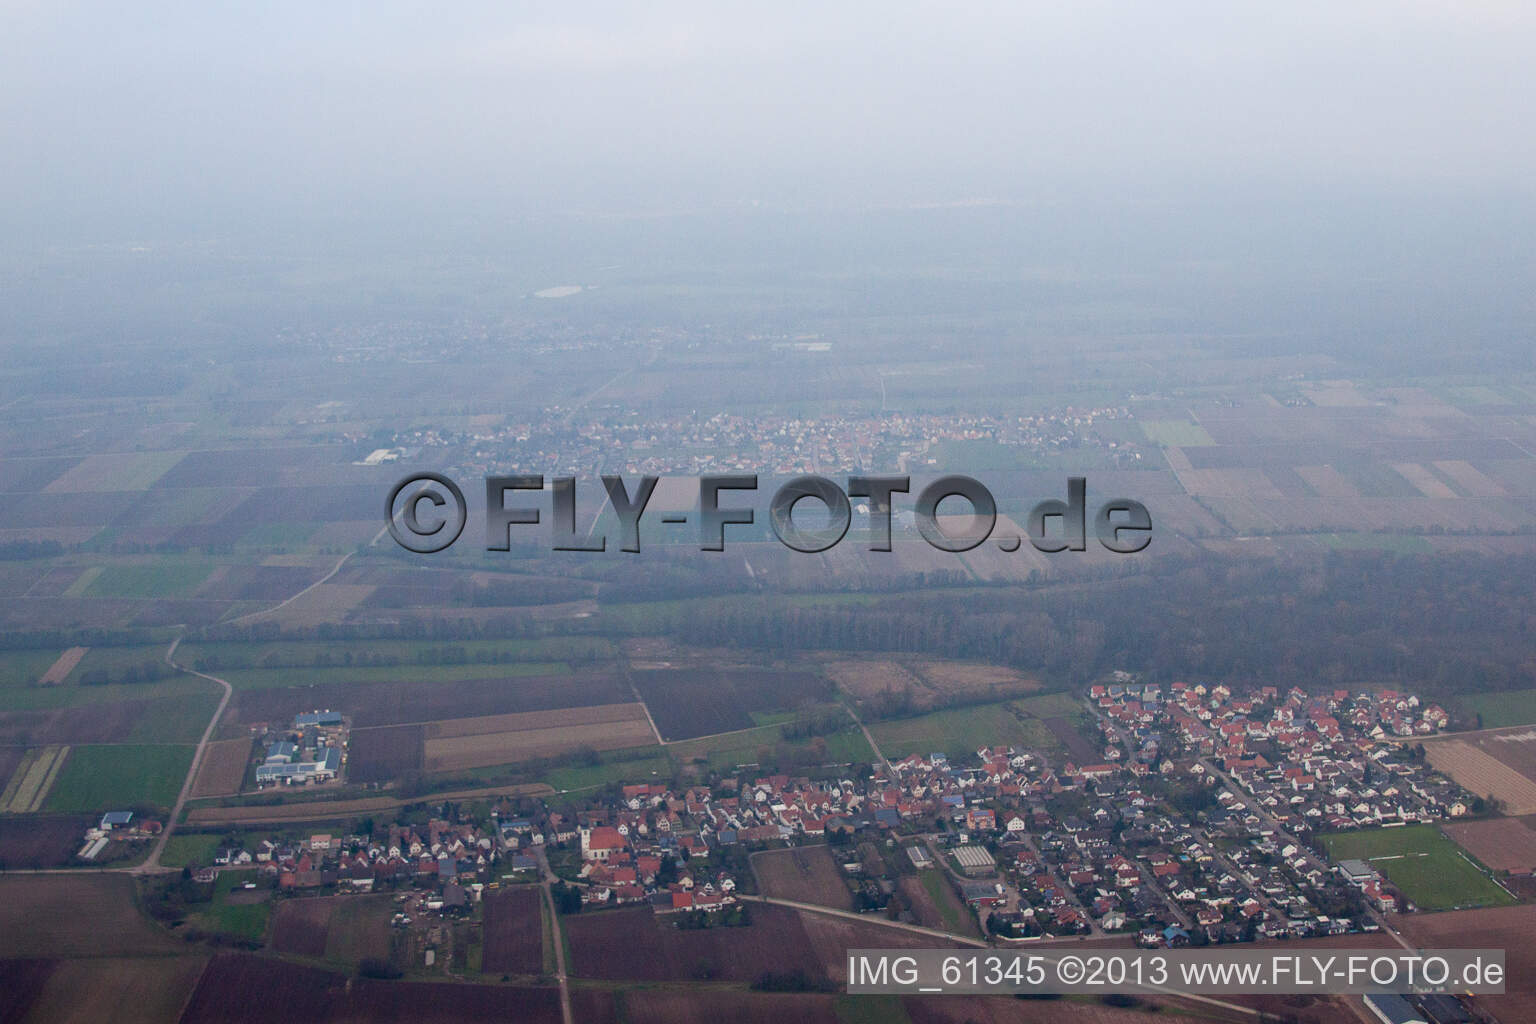 Luftbild von Freisbach im Bundesland Rheinland-Pfalz, Deutschland